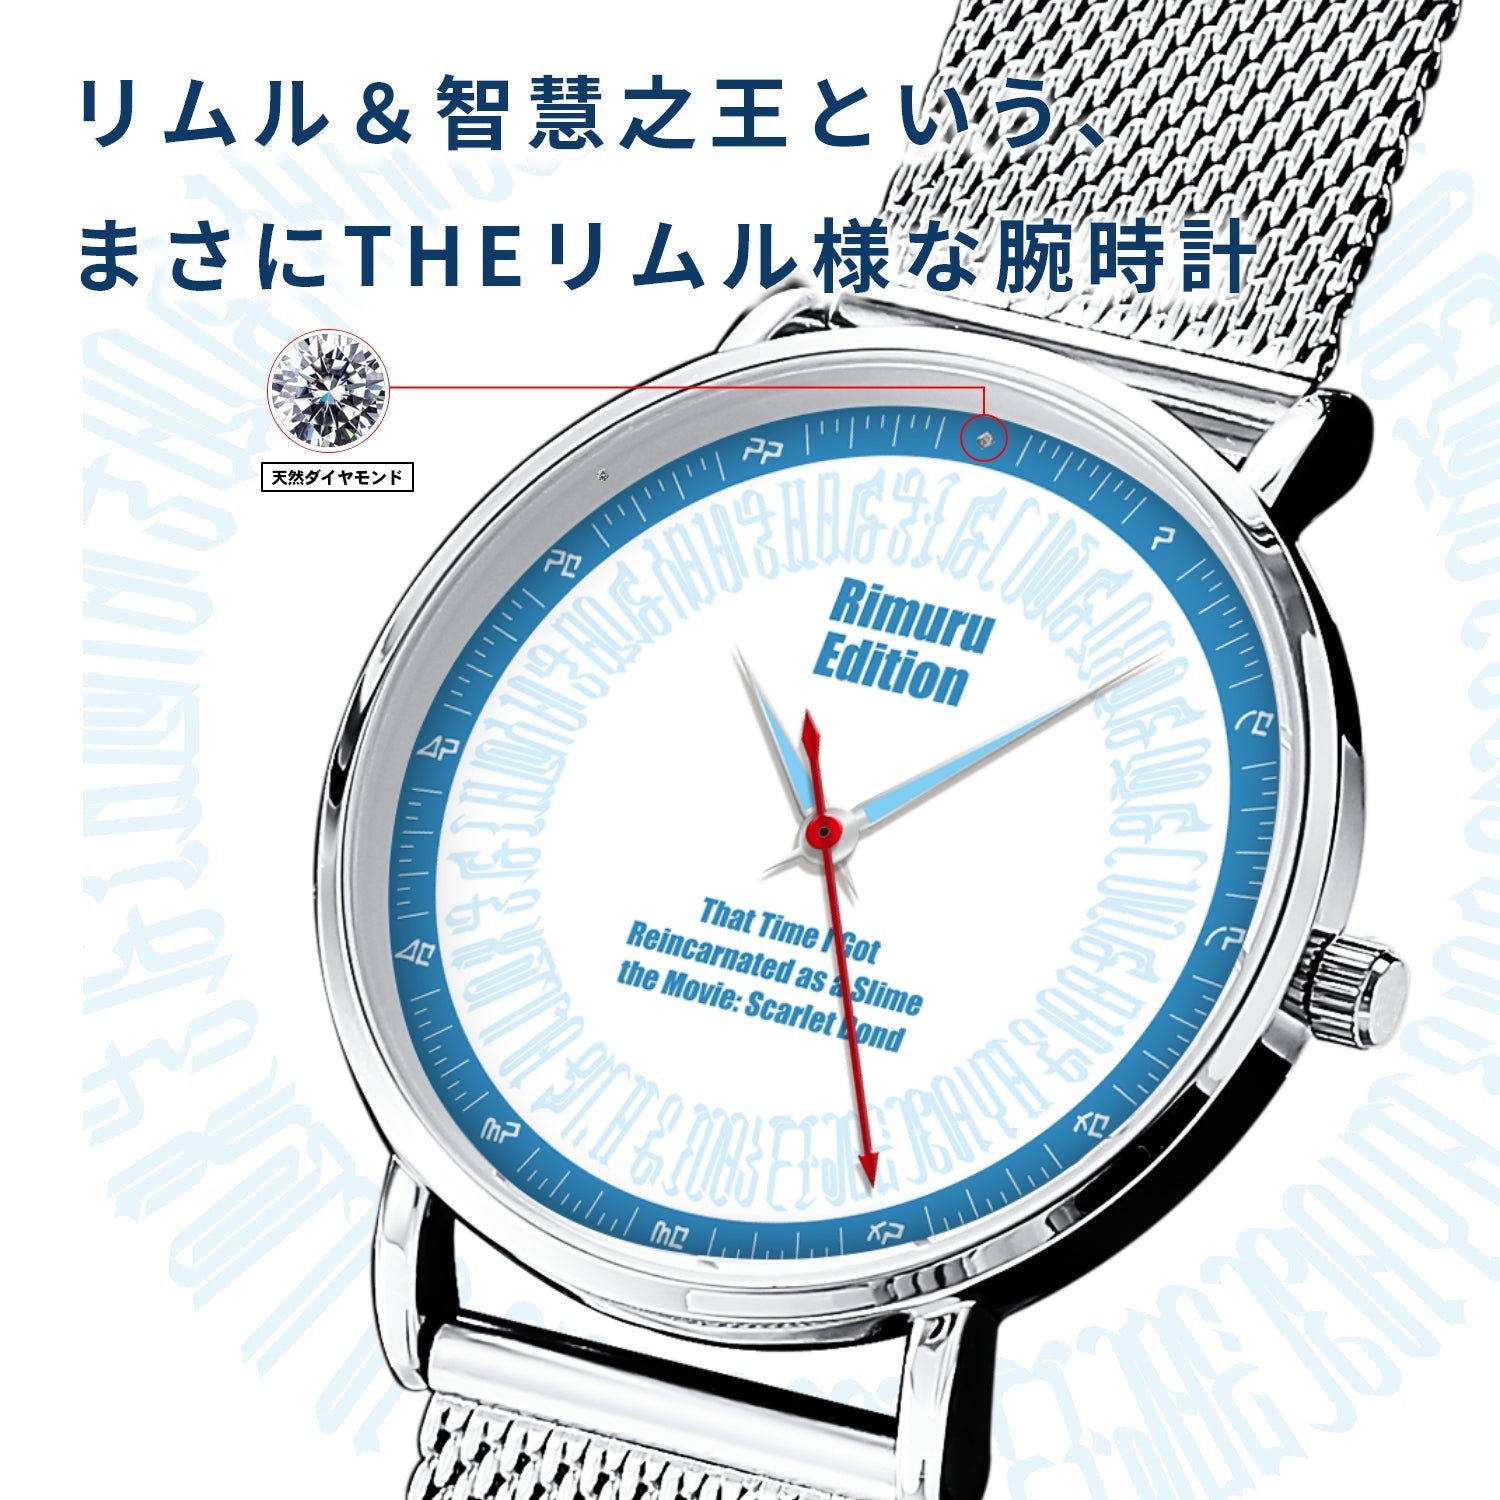 「劇場版 転生したらスライムだった件 紅蓮の絆編」オフィシャルソーラー腕時計 リムル・エディション - 公式通販サイト「アニメコレクション/Anime Collection」